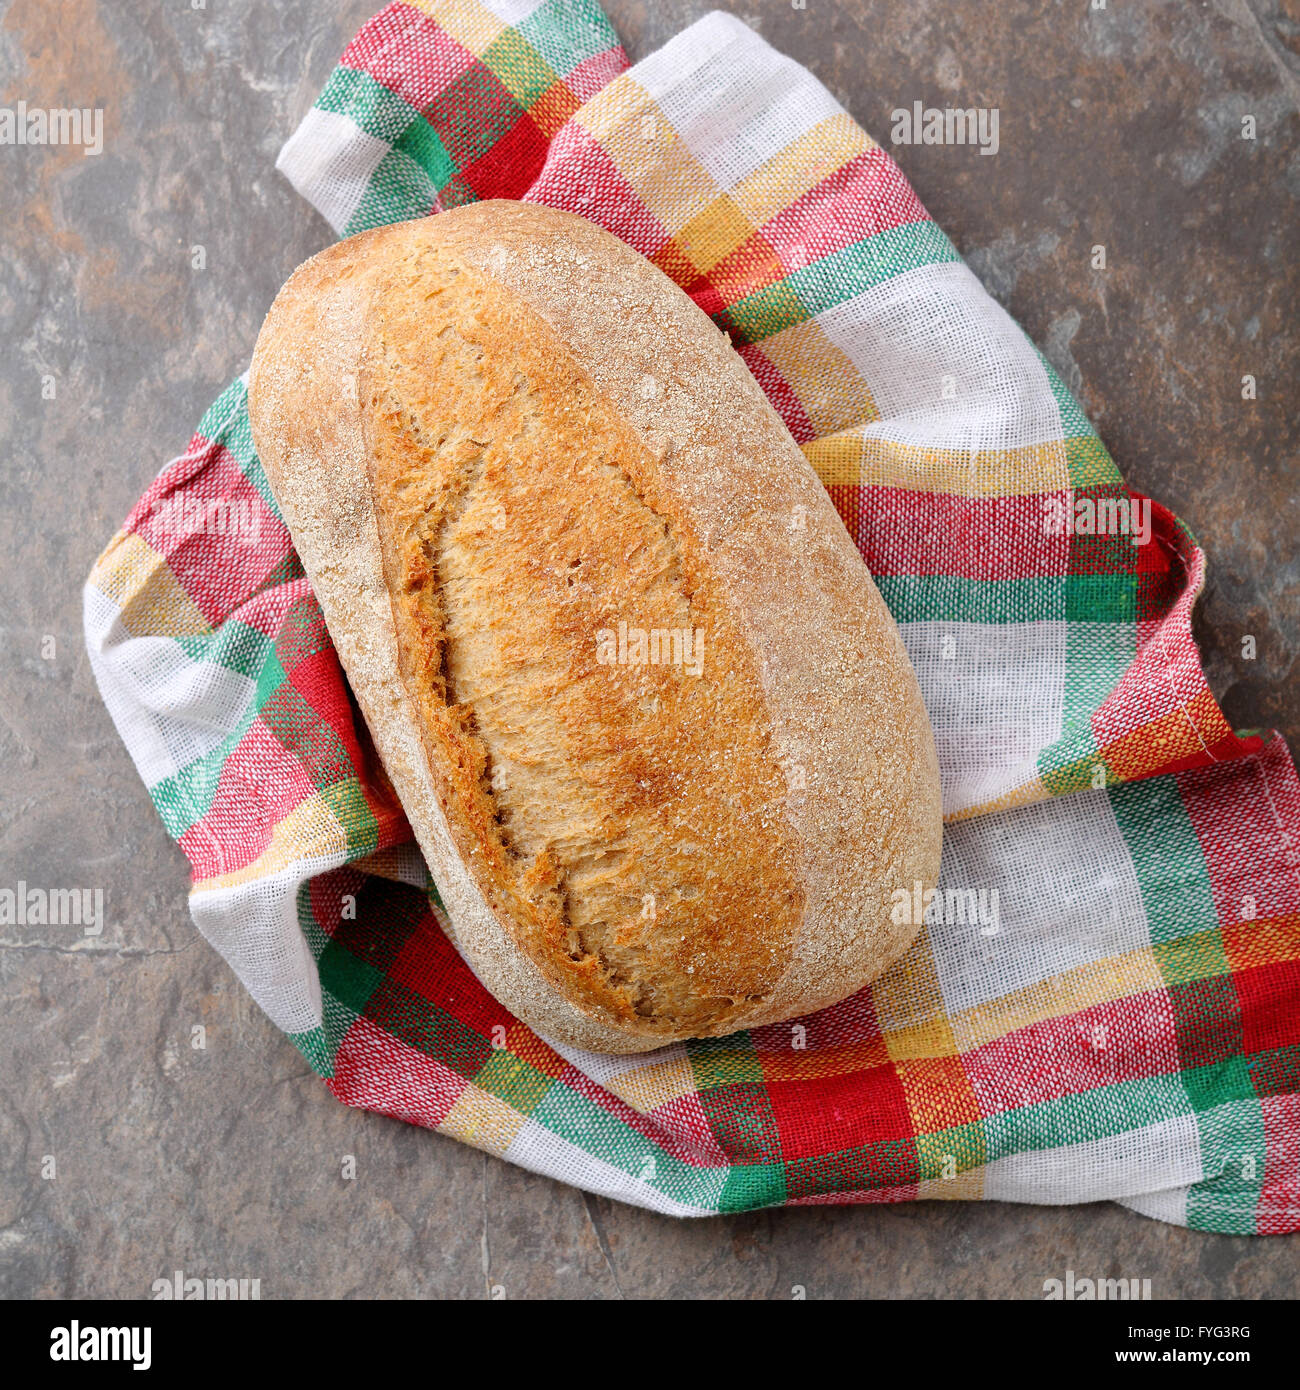 whole italian bread on napkin close-up Stock Photo